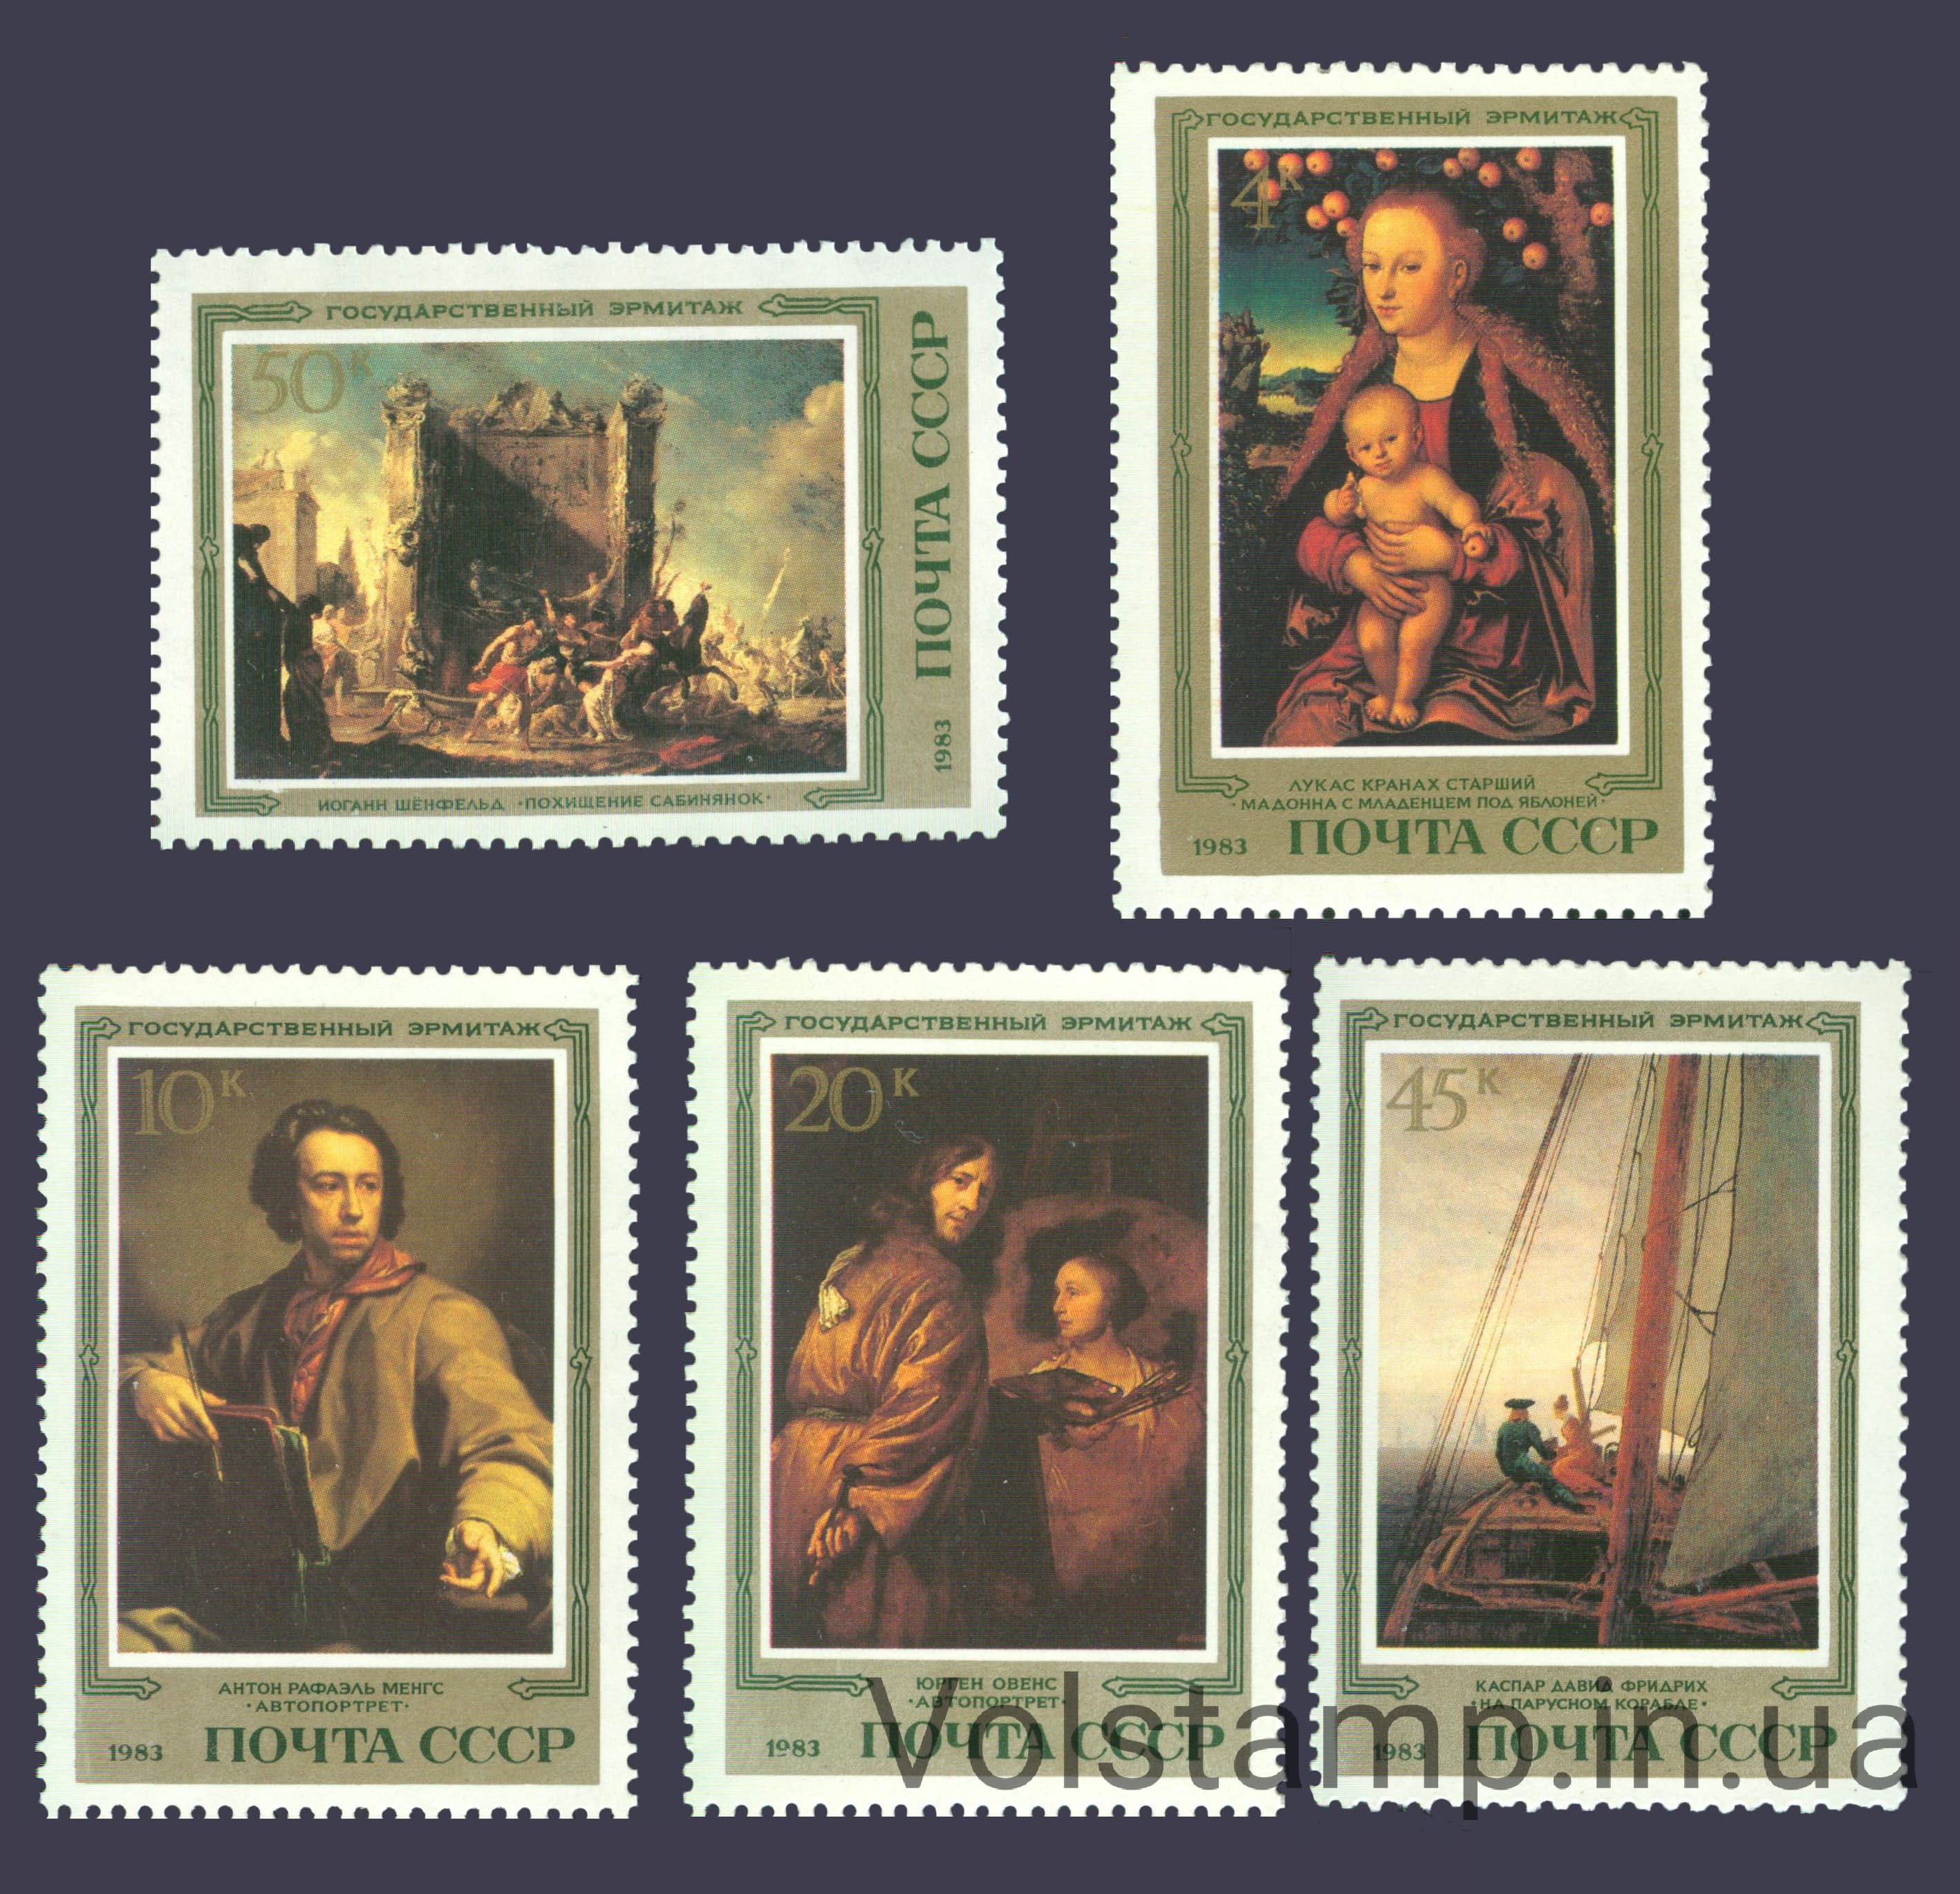 1983 серия марок Шедевры Государственного Эрмитажа. Немецкая живопись №5381-5385